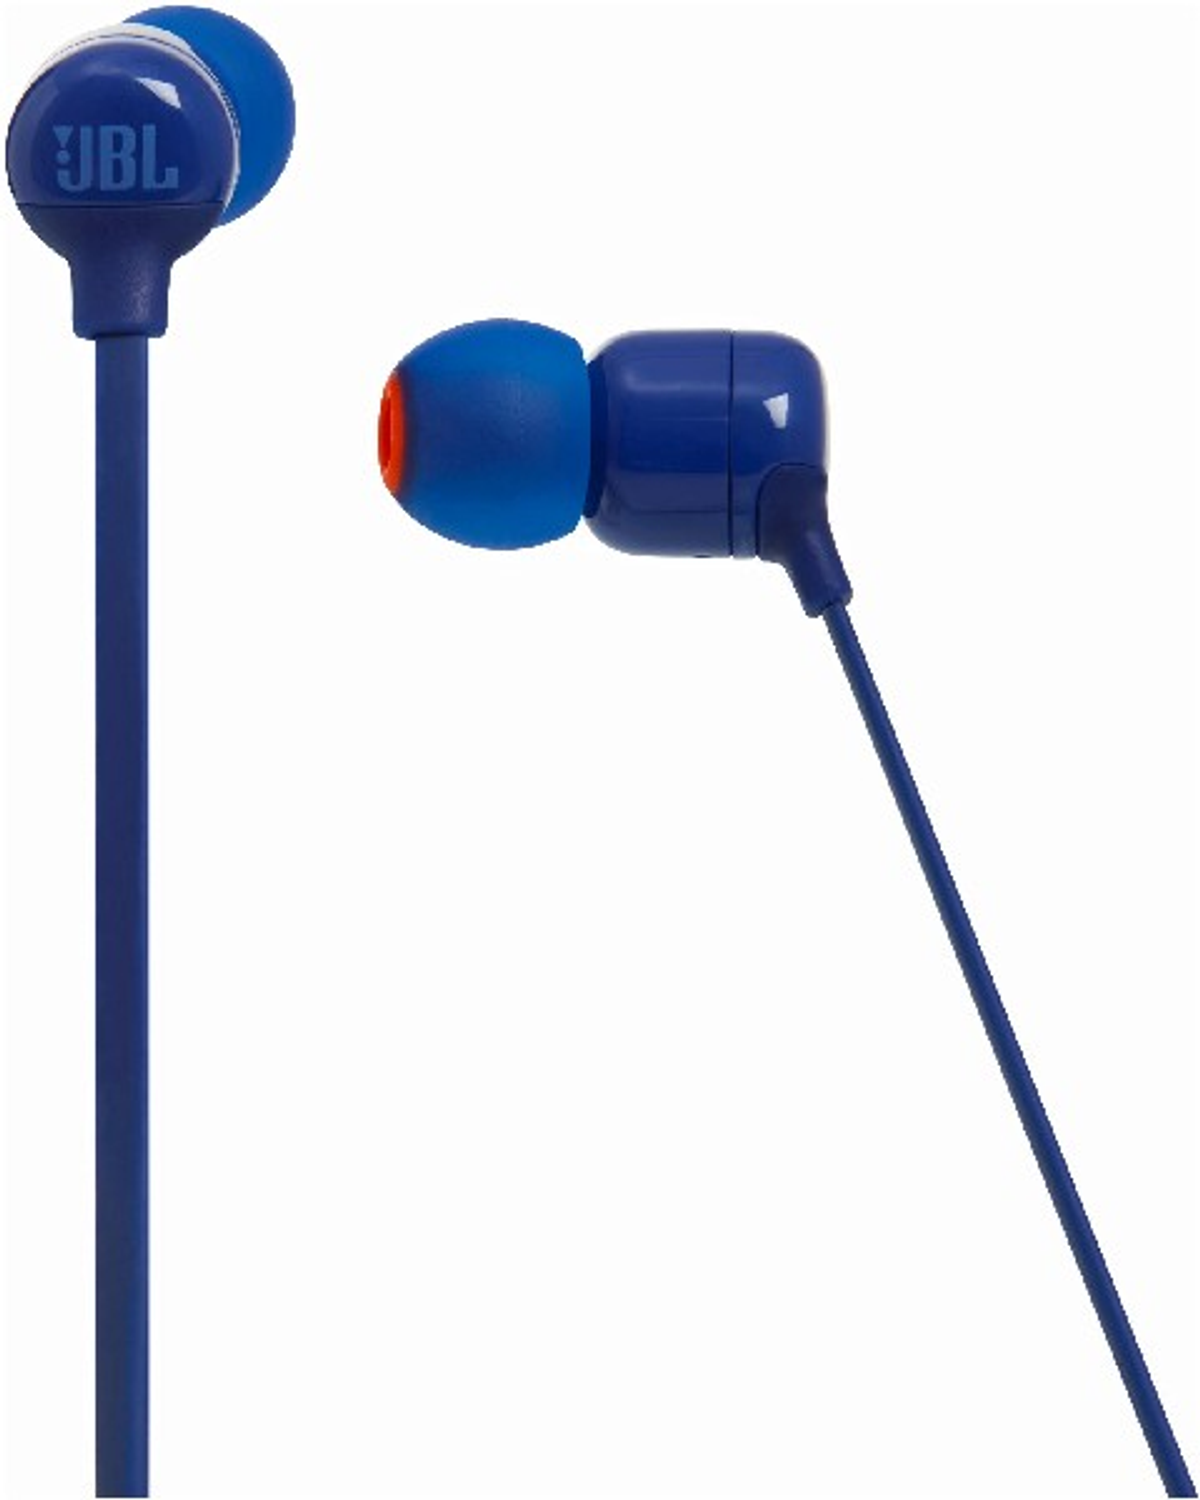 Bluetooth Blau JBL 110 In-ear WIRELESS IN-EAR BLU HEADPHONES, CANAL BT T Kopfhörer